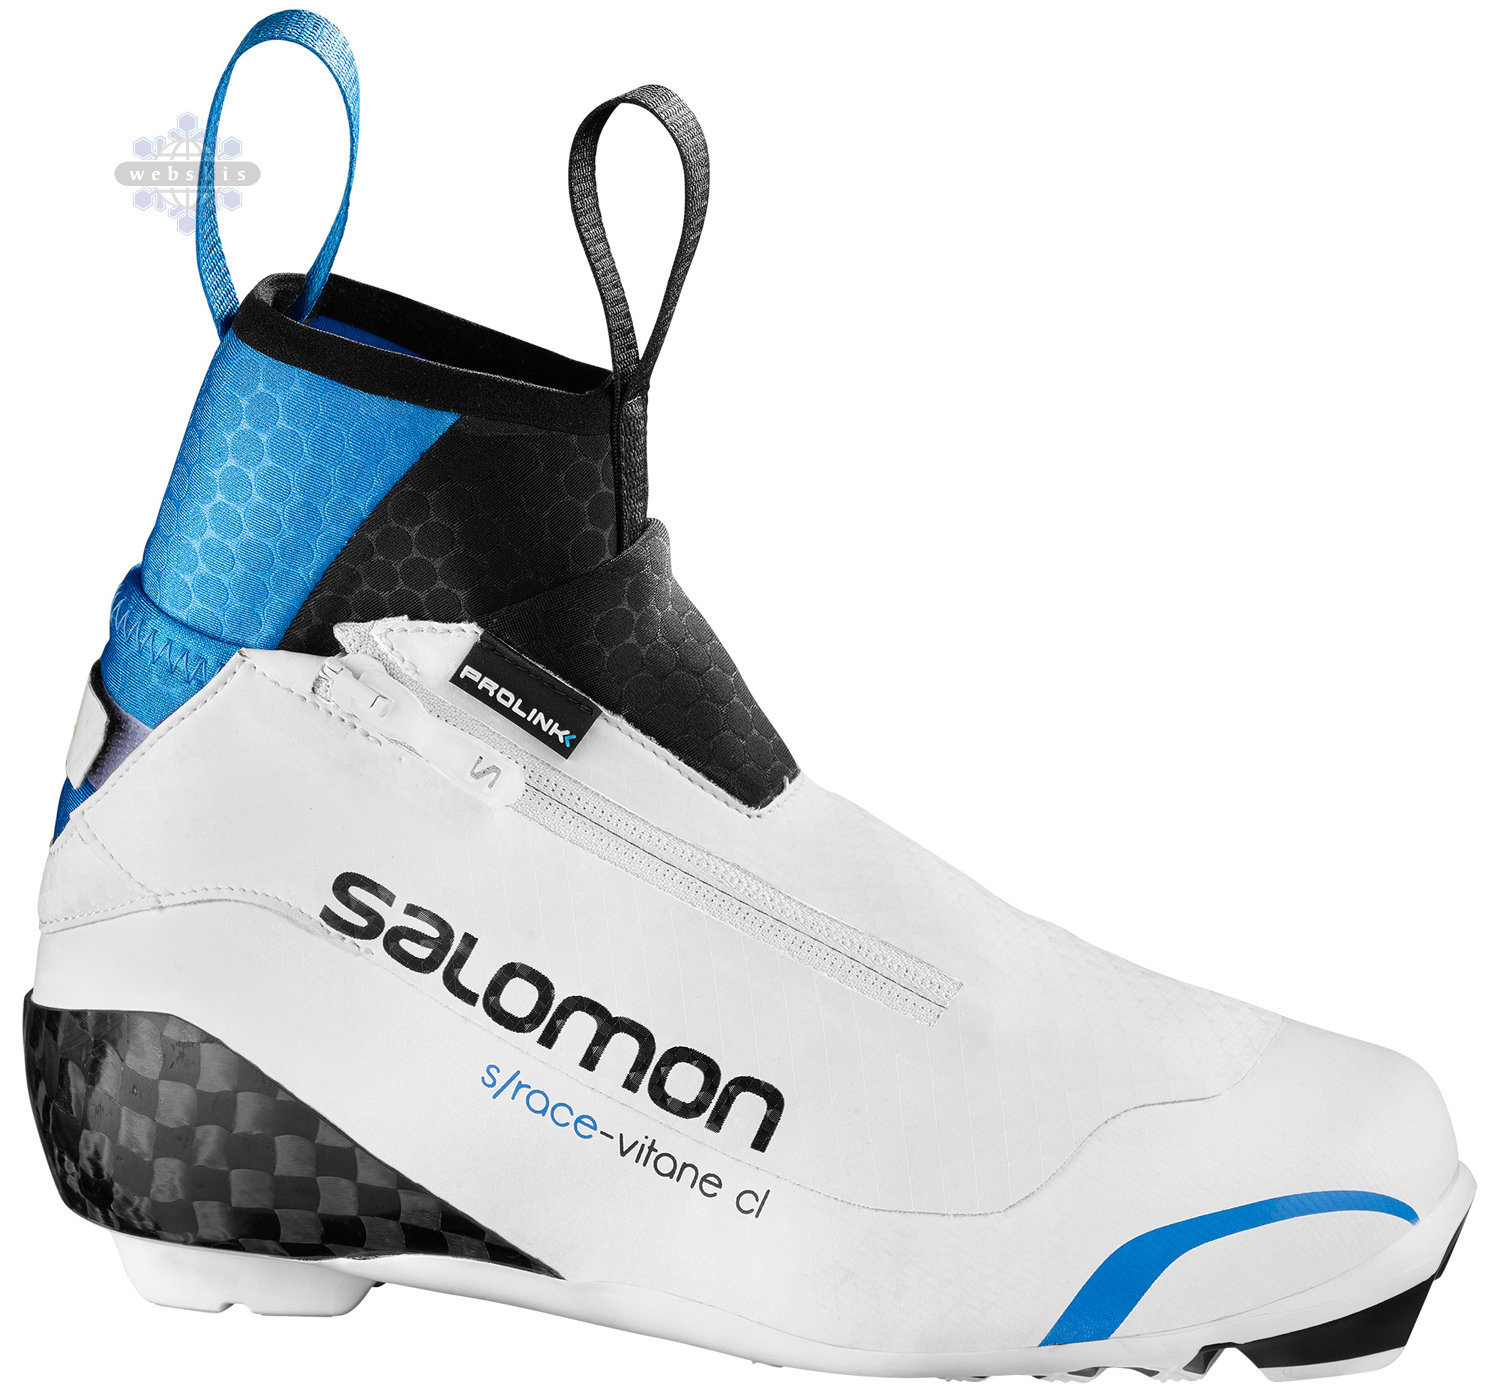 Salomon S/Race Vitane Prolink Women's Boot - & WebSkis | Bend, OR